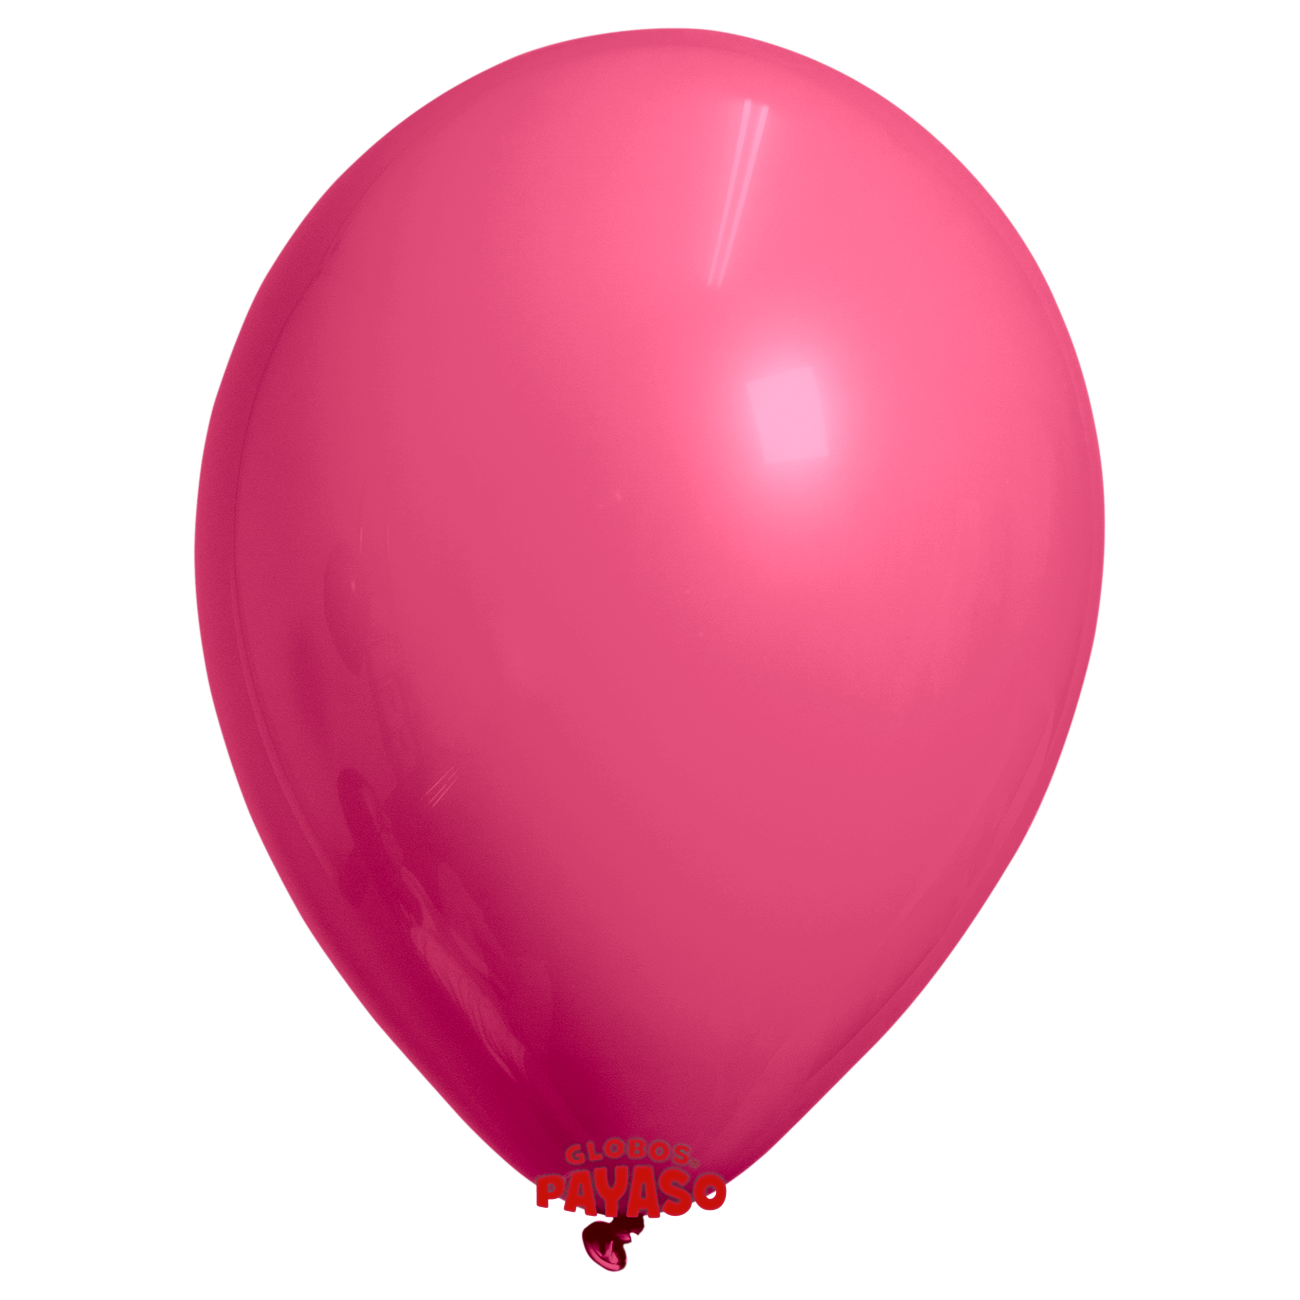 Globos Payaso / Unique 12" Dark Pink Decorator Balloon